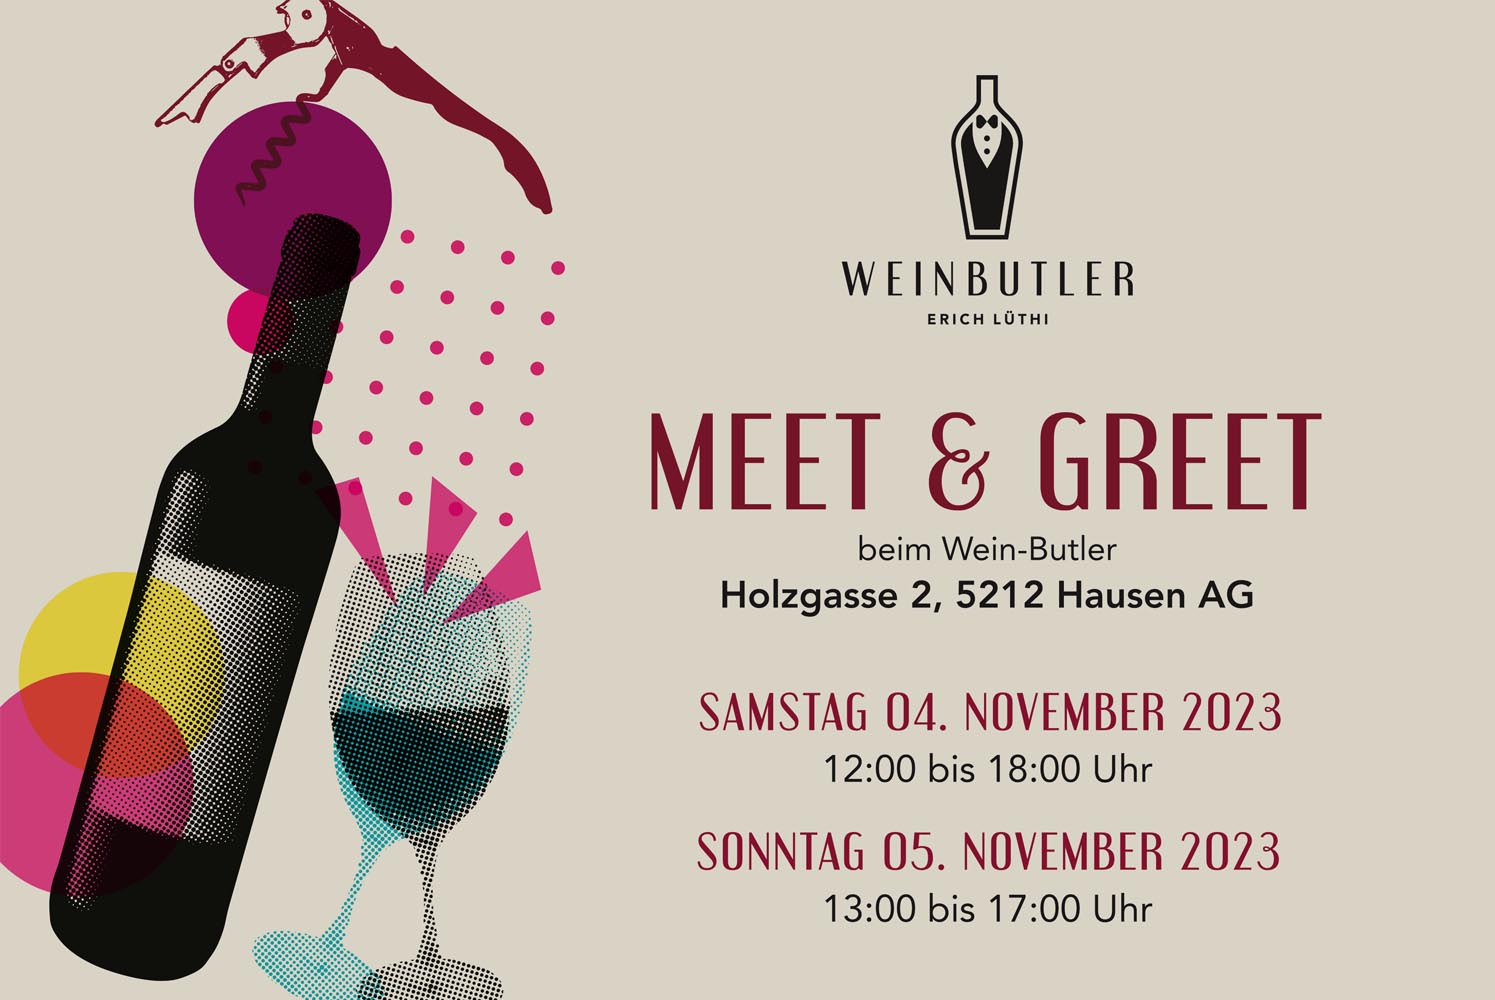 Meet & Greet 2023 at Wein-Butler - Meet & Greet 2023 at Wein-Butler